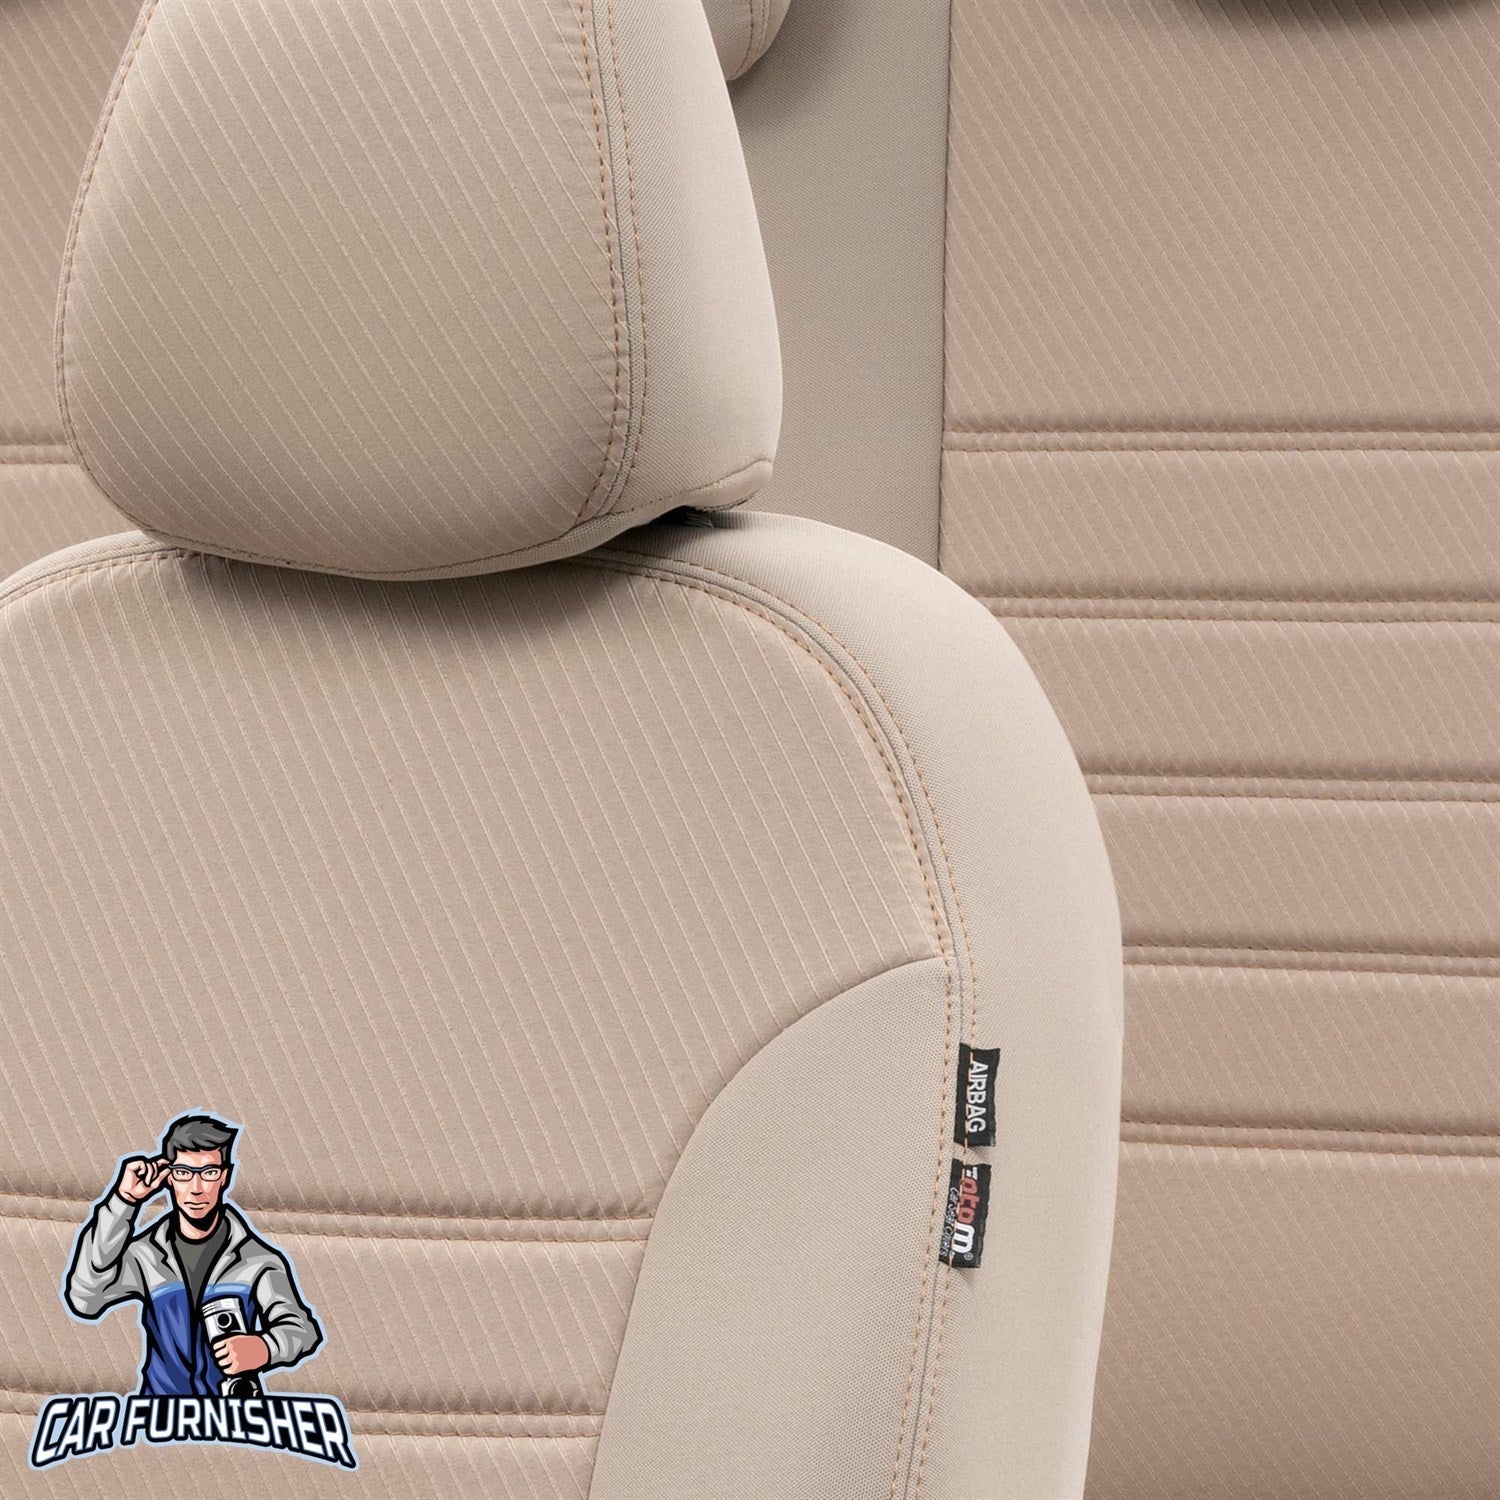 Audi Q7 Seat Cover Original Jacquard Design Dark Beige Jacquard Fabric